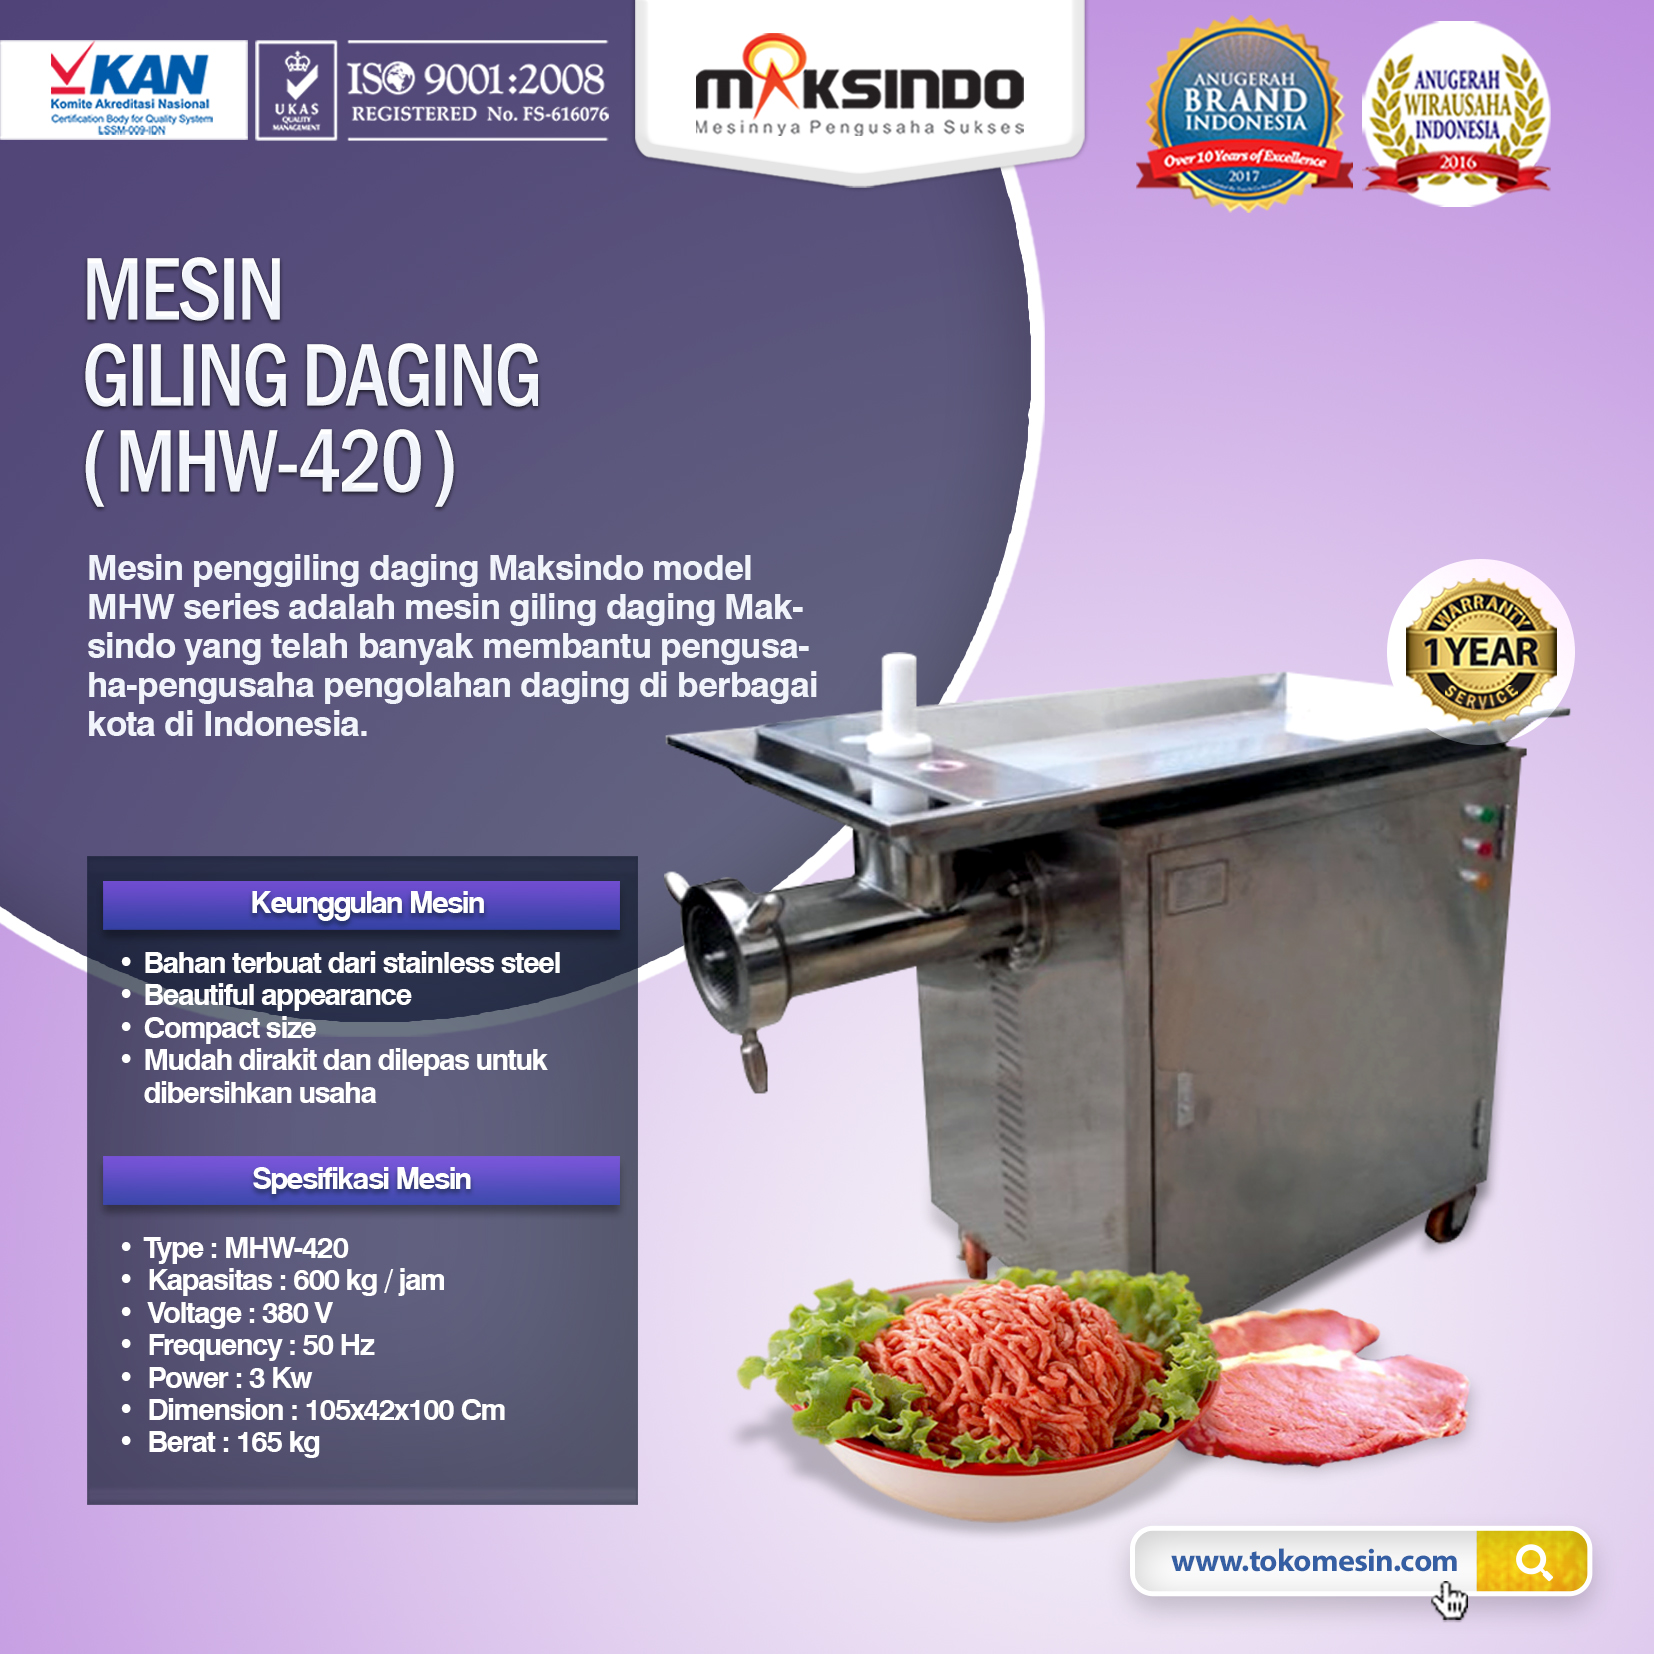 Mesin Giling Daging MHW-420